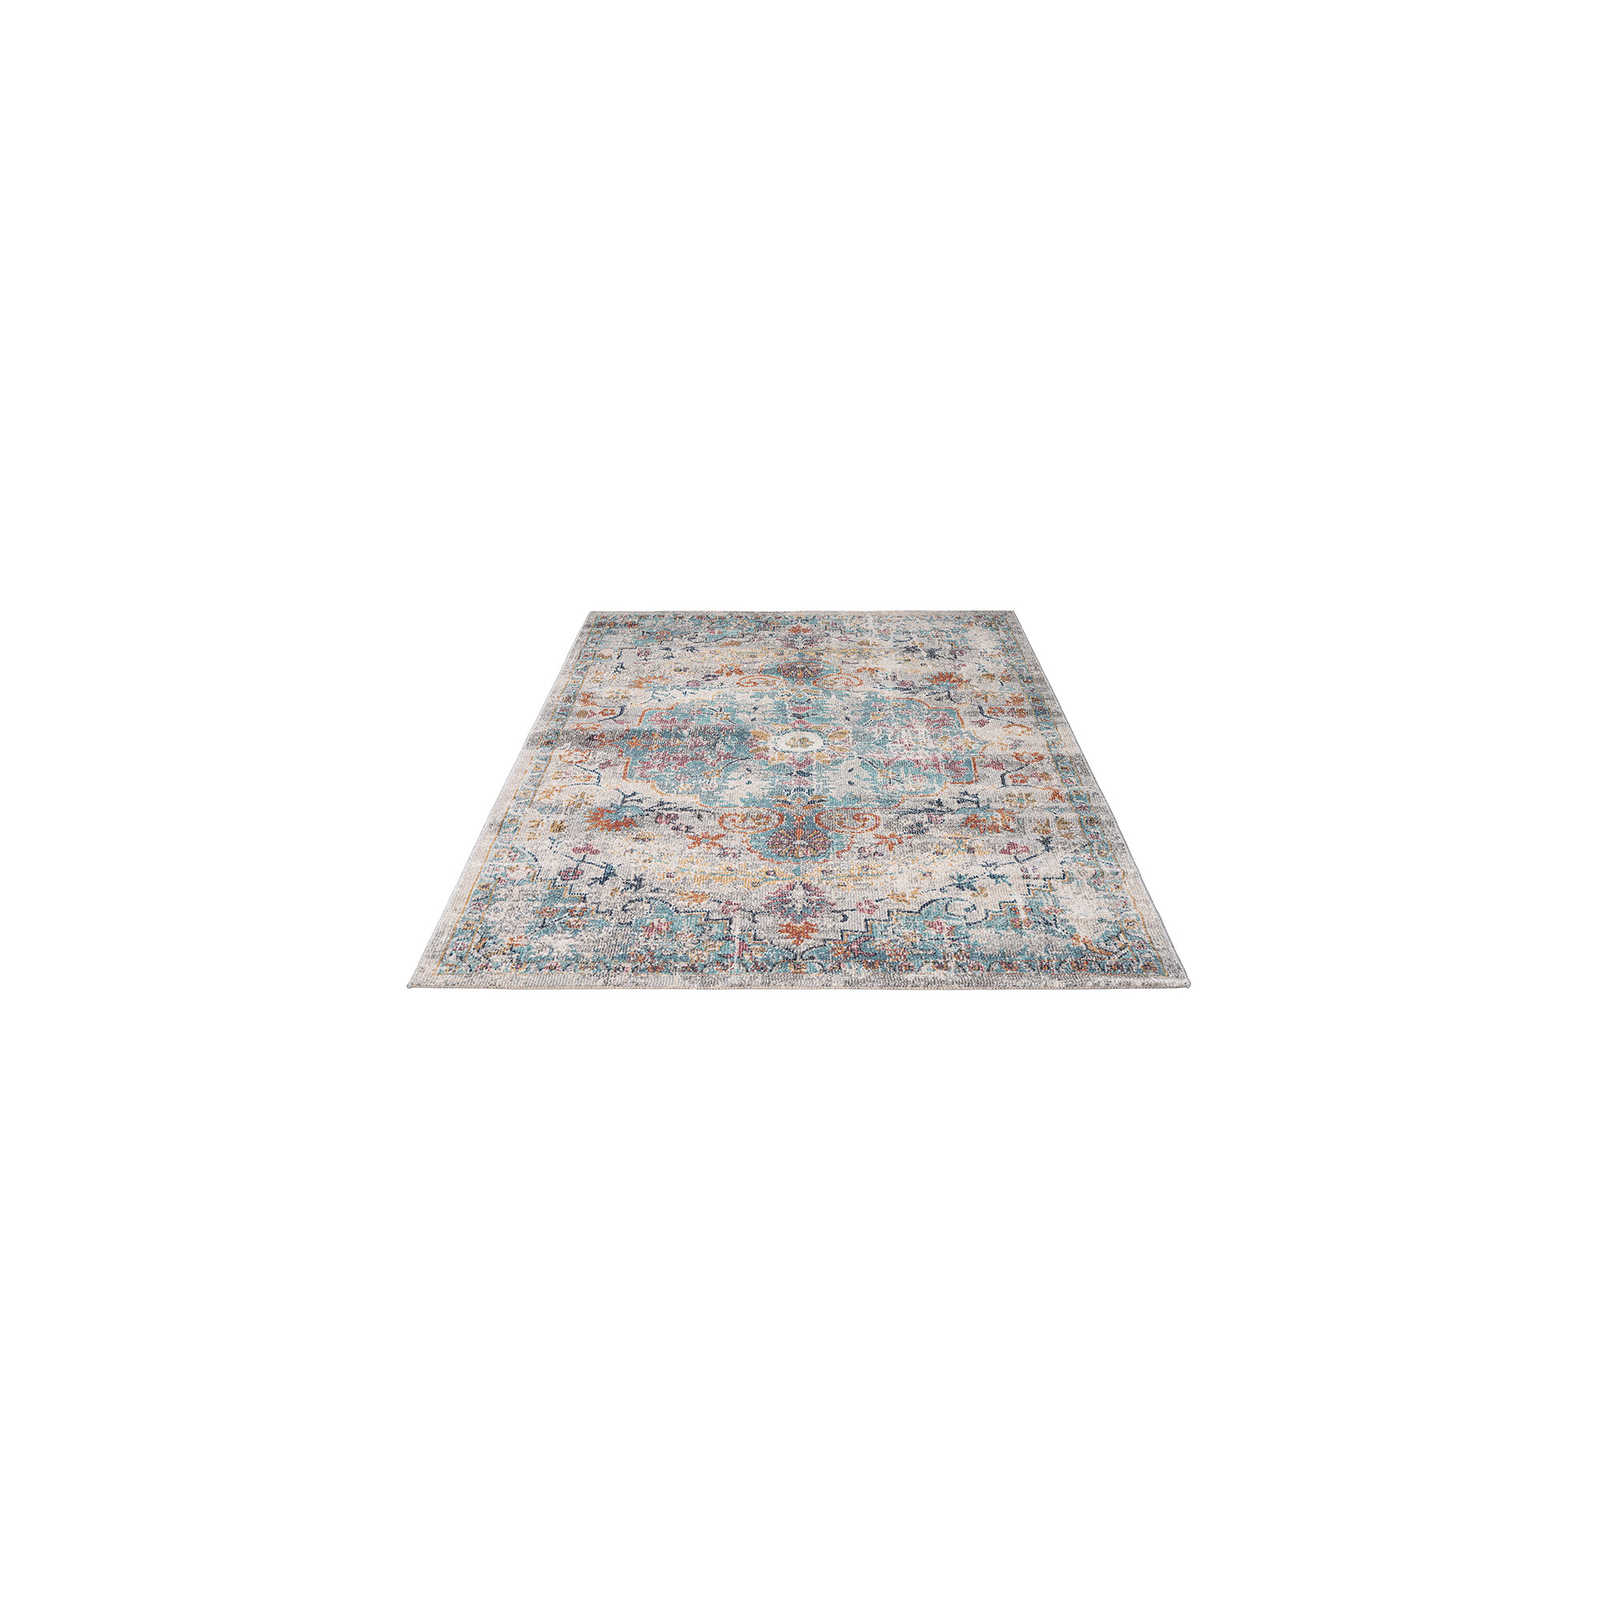 Pflegeleichter Outdoor Teppich Bunt – 170 x 120 cm
